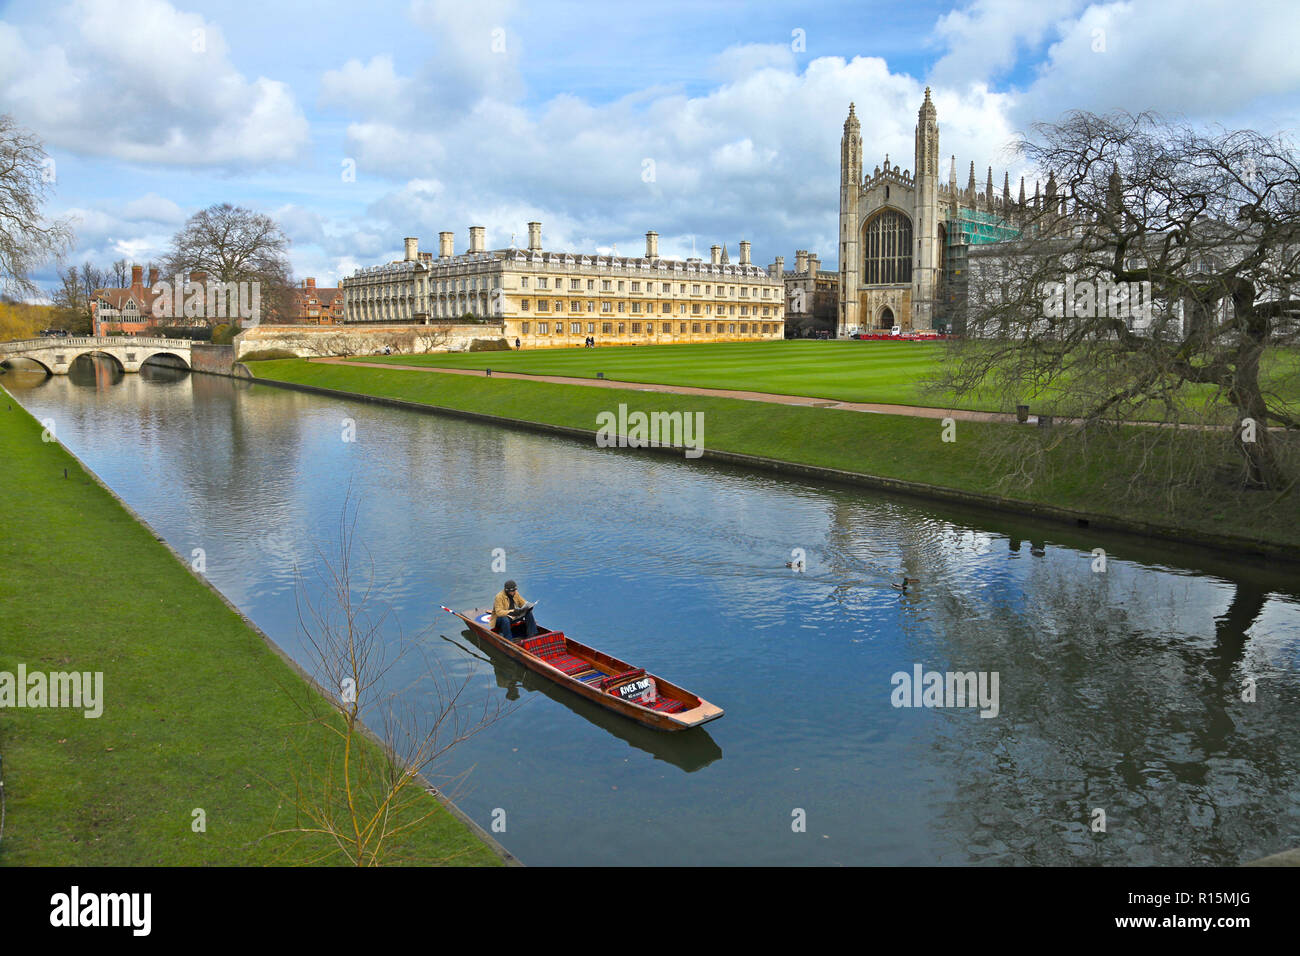 The River Cam, Cambridge,England Stock Photo